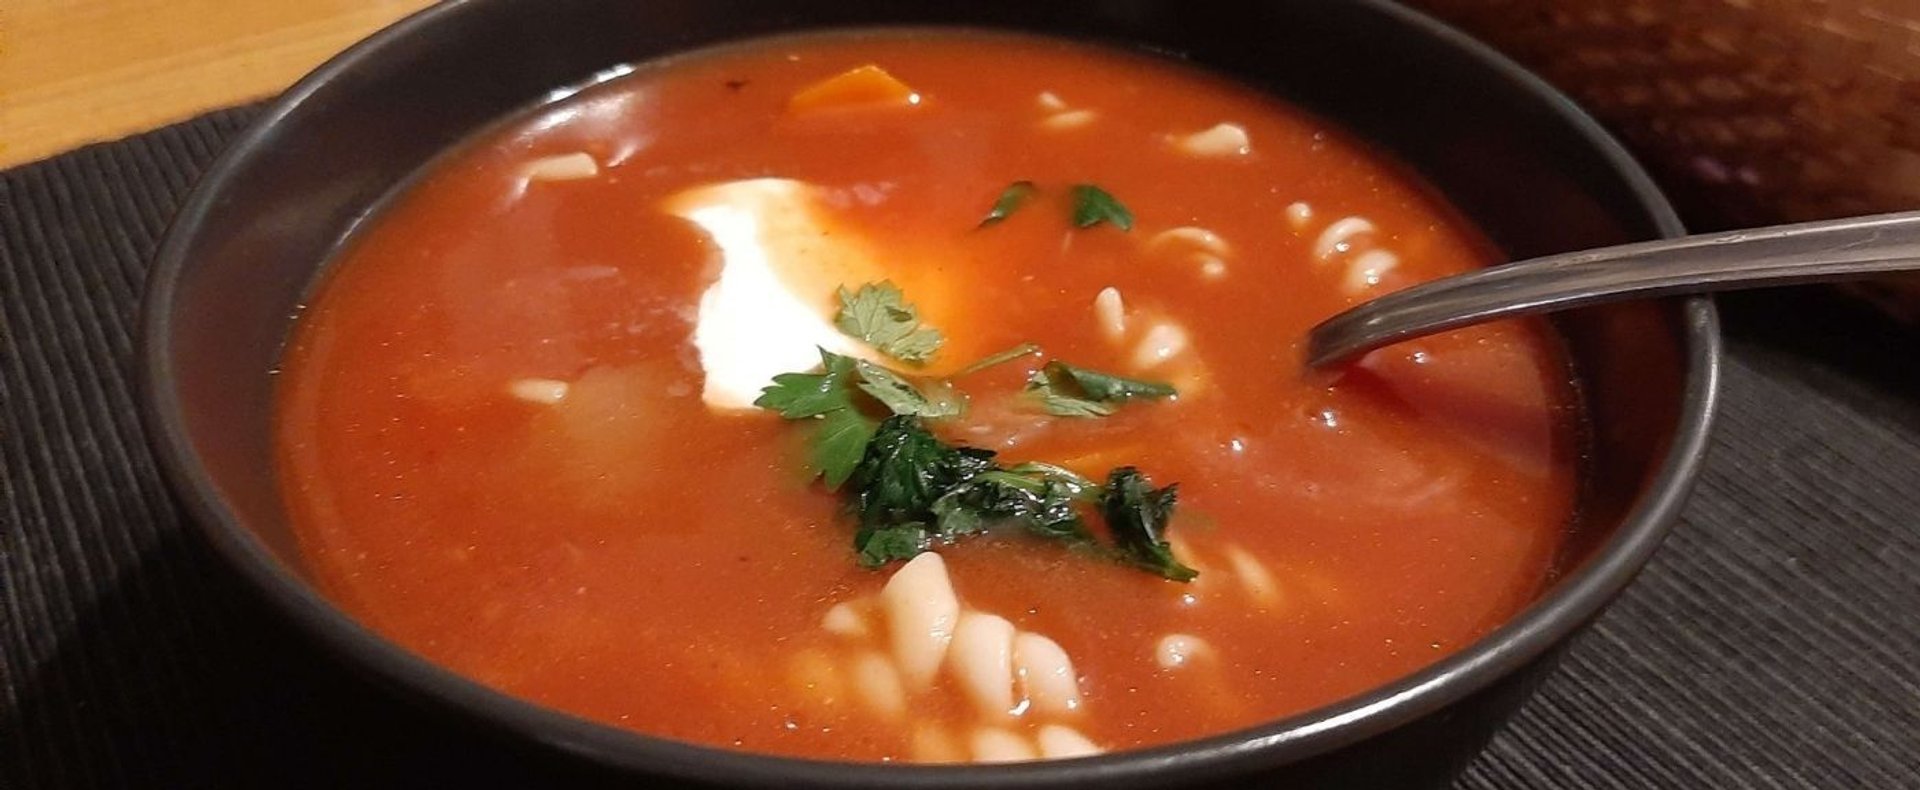 Zupa pomidorowa w wyjątkowej odsłonie